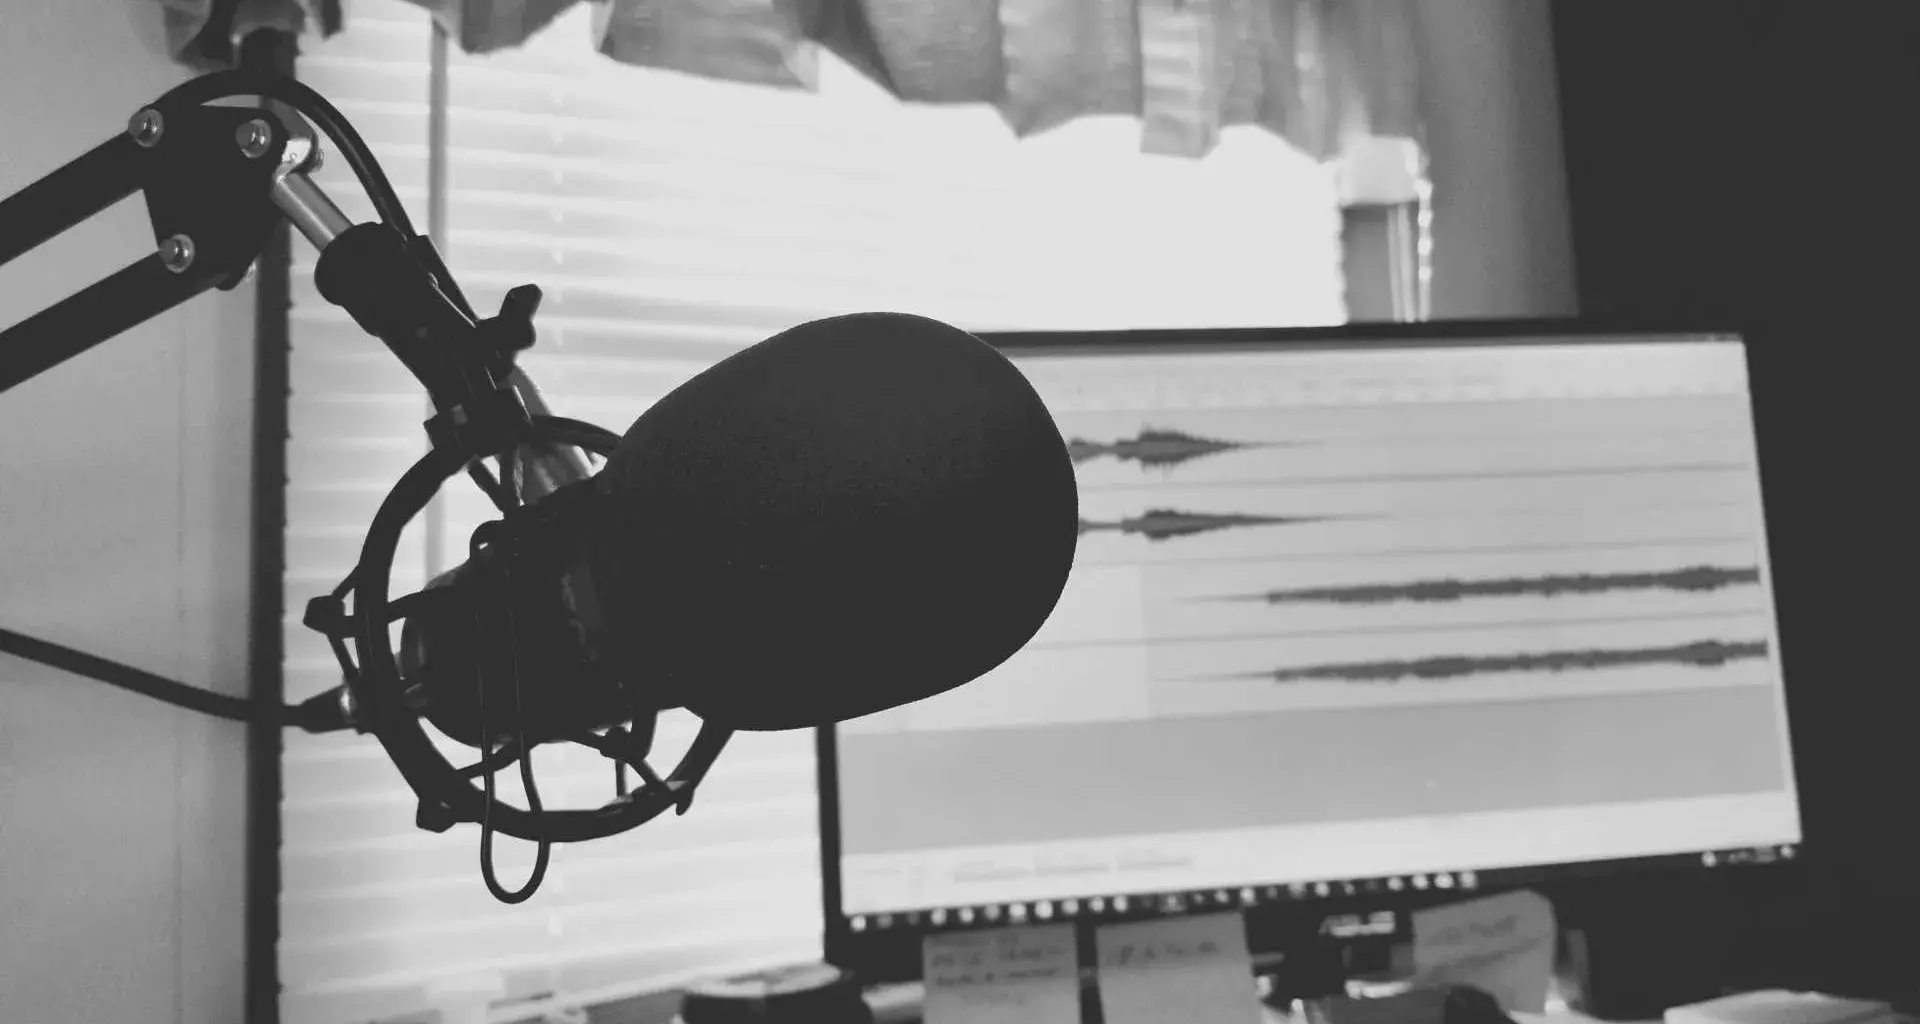 Por su flexibilidad los podcasts se han convertido en "los consentidos" de mucha gente